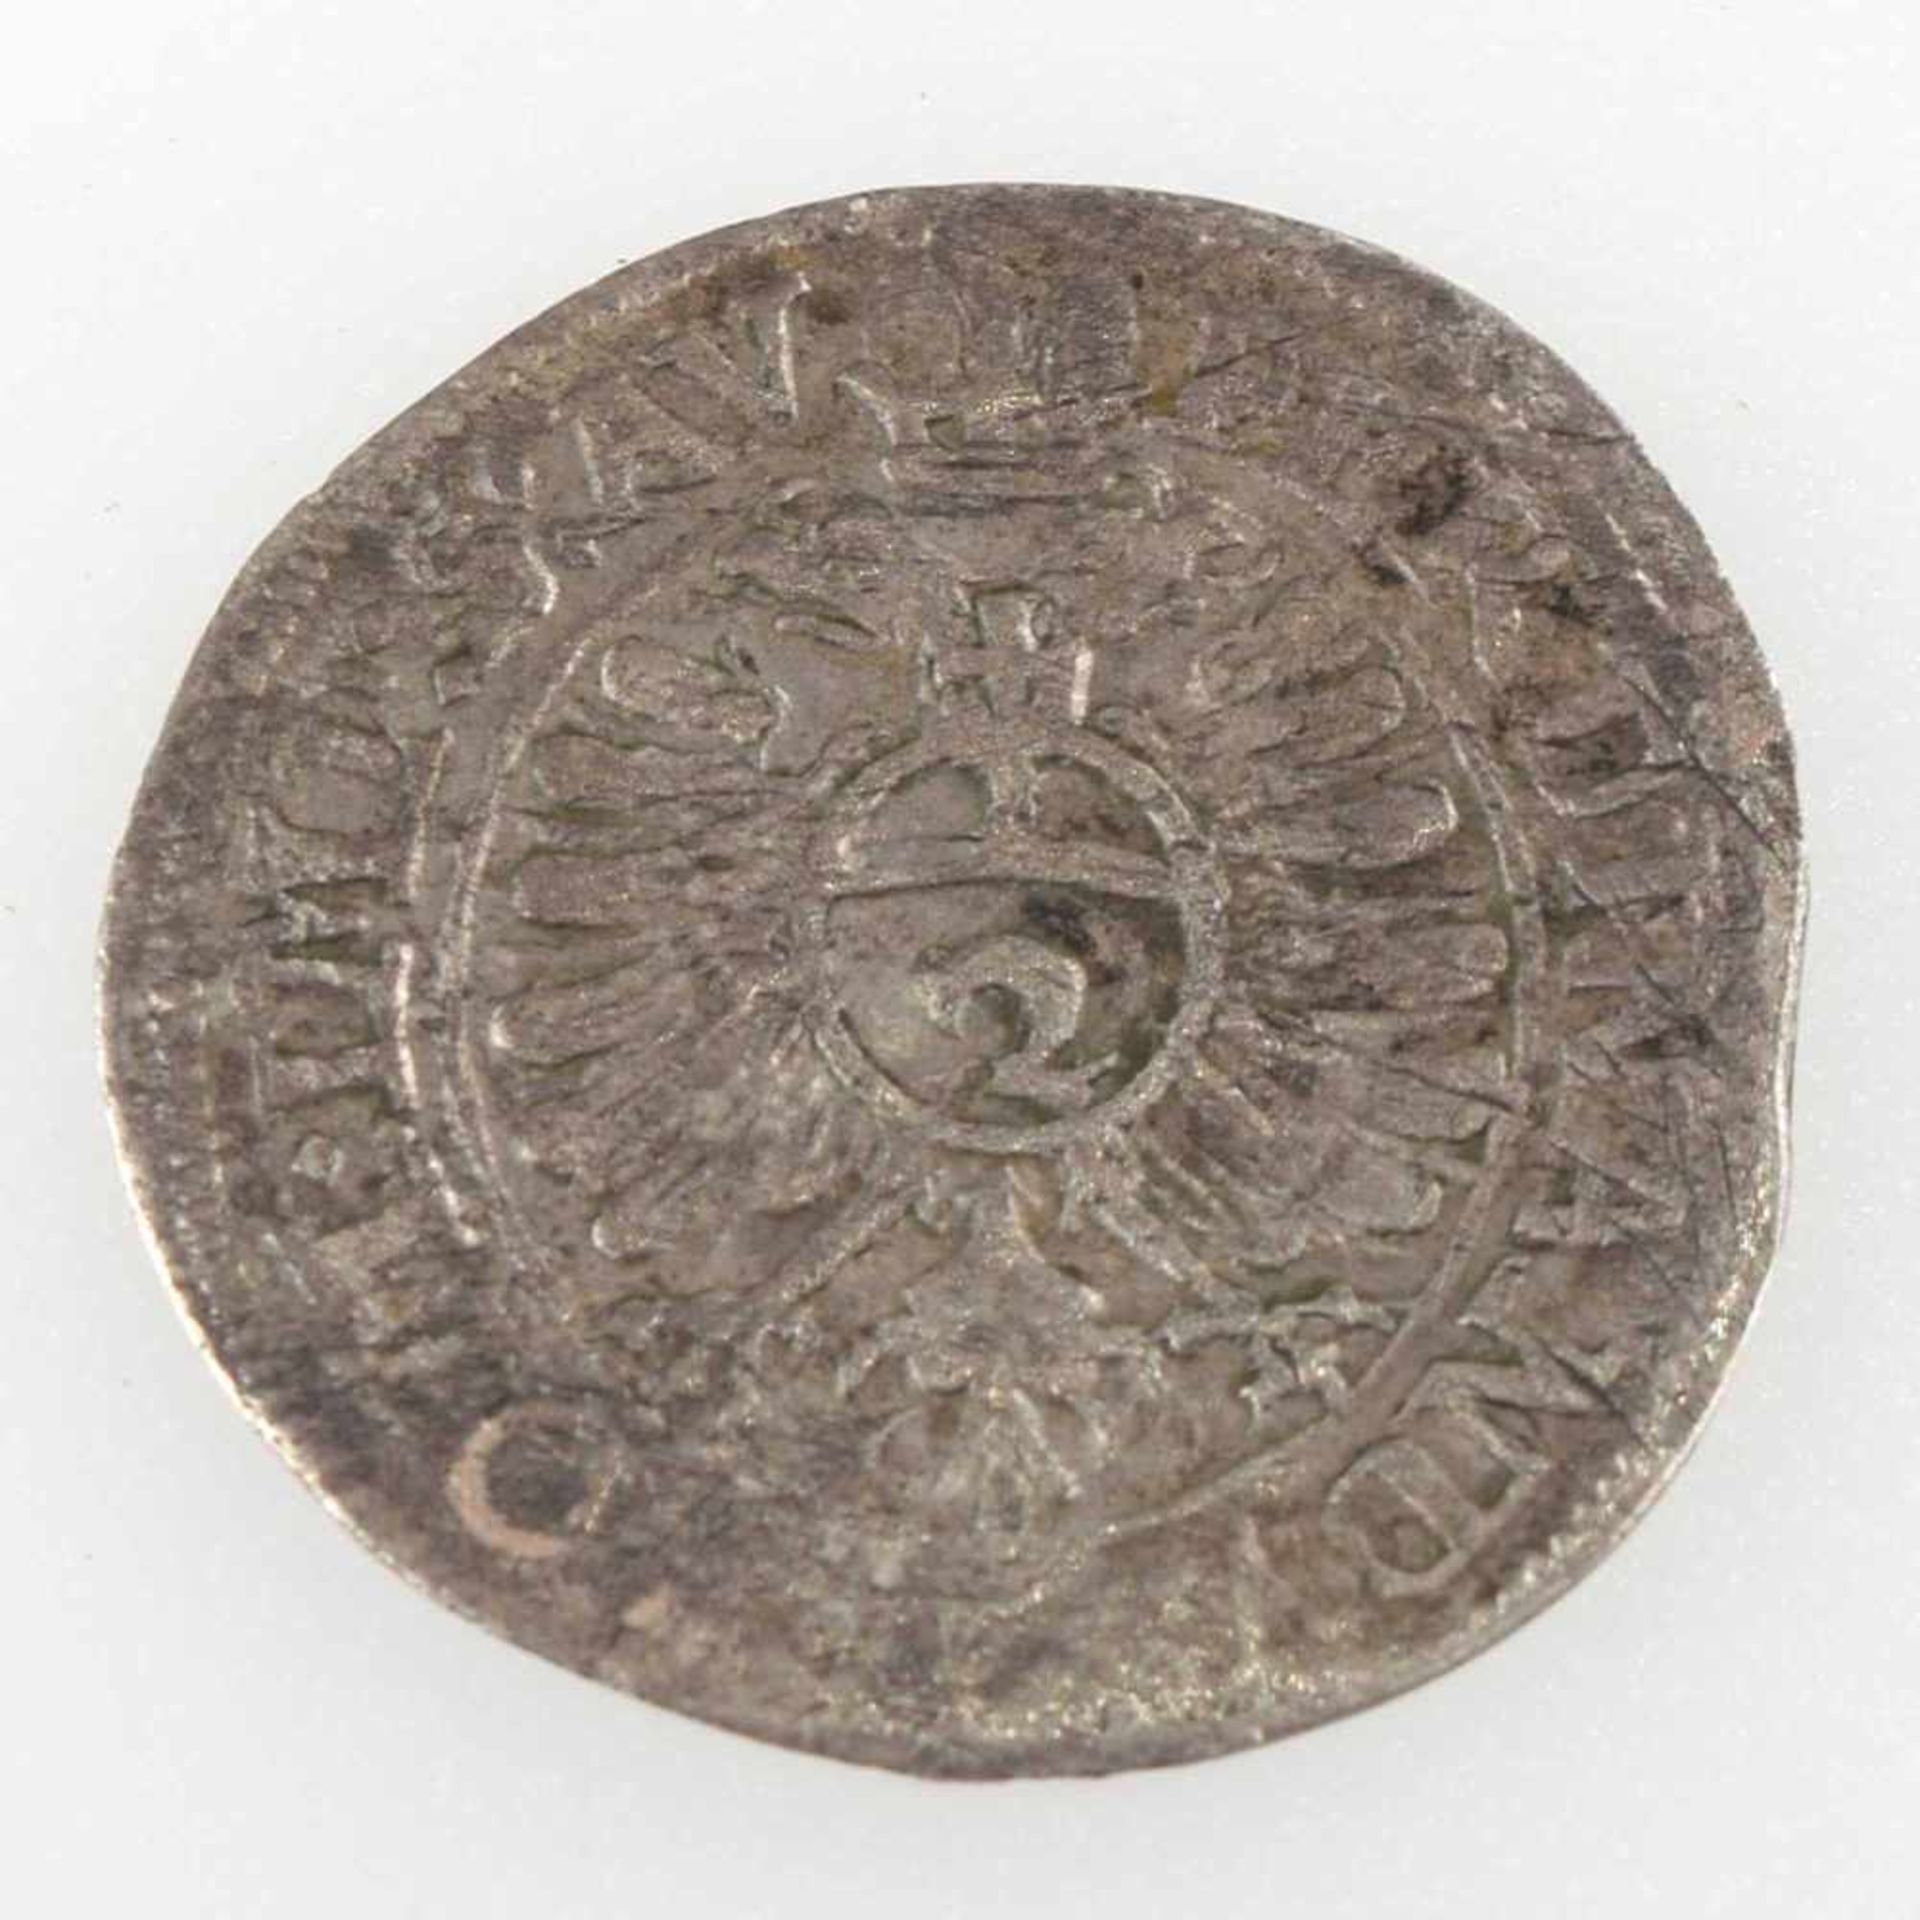 Silbermünze Augsburg 1623 1/2 Batzen zu 2 Kreuzer, Stadt Augsburg, av. Zapfen und Jahreszahl, rv. - Bild 3 aus 3